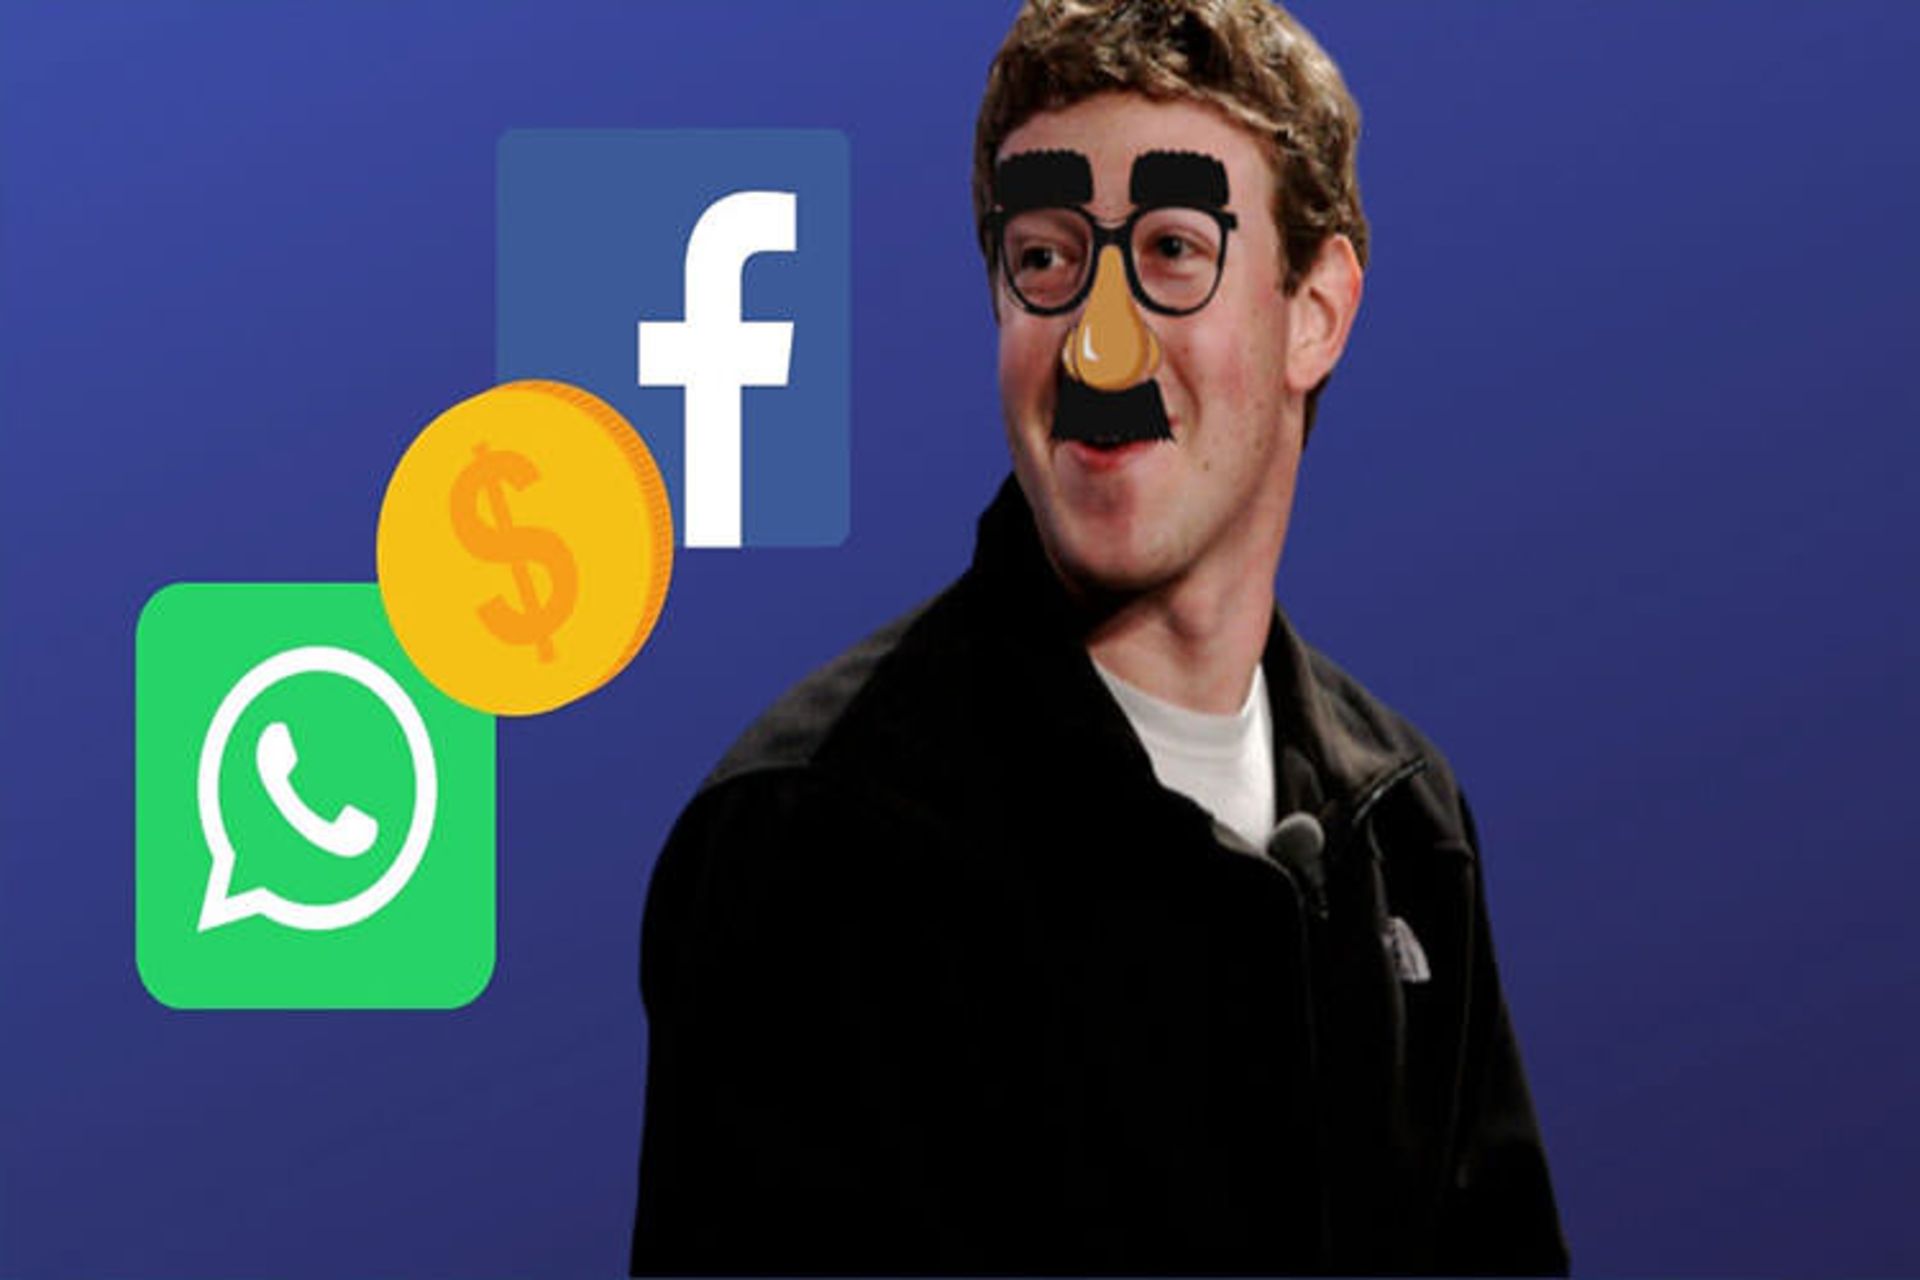 ارز دیجیتال فیسبوک/ facebook cryptocurrency